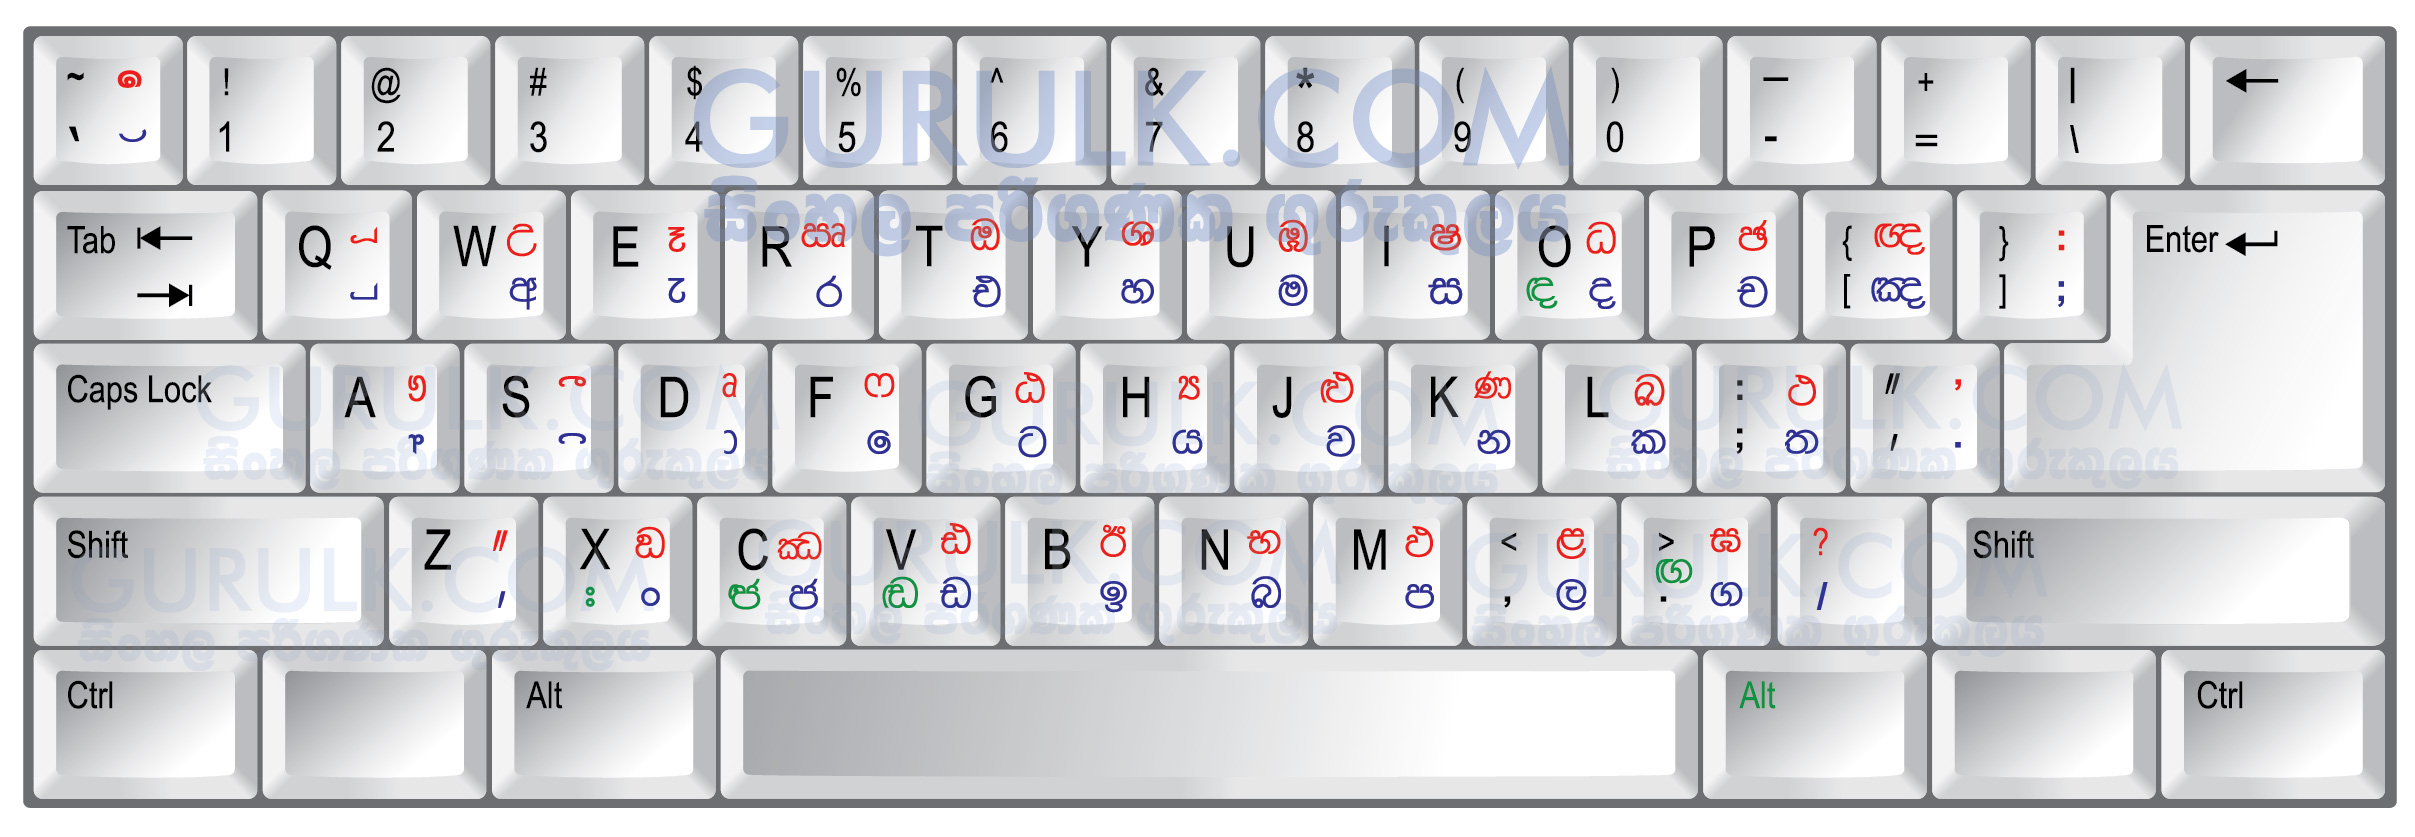 Sinhala Unicode Keyboard Layout Hi-Res Image Download